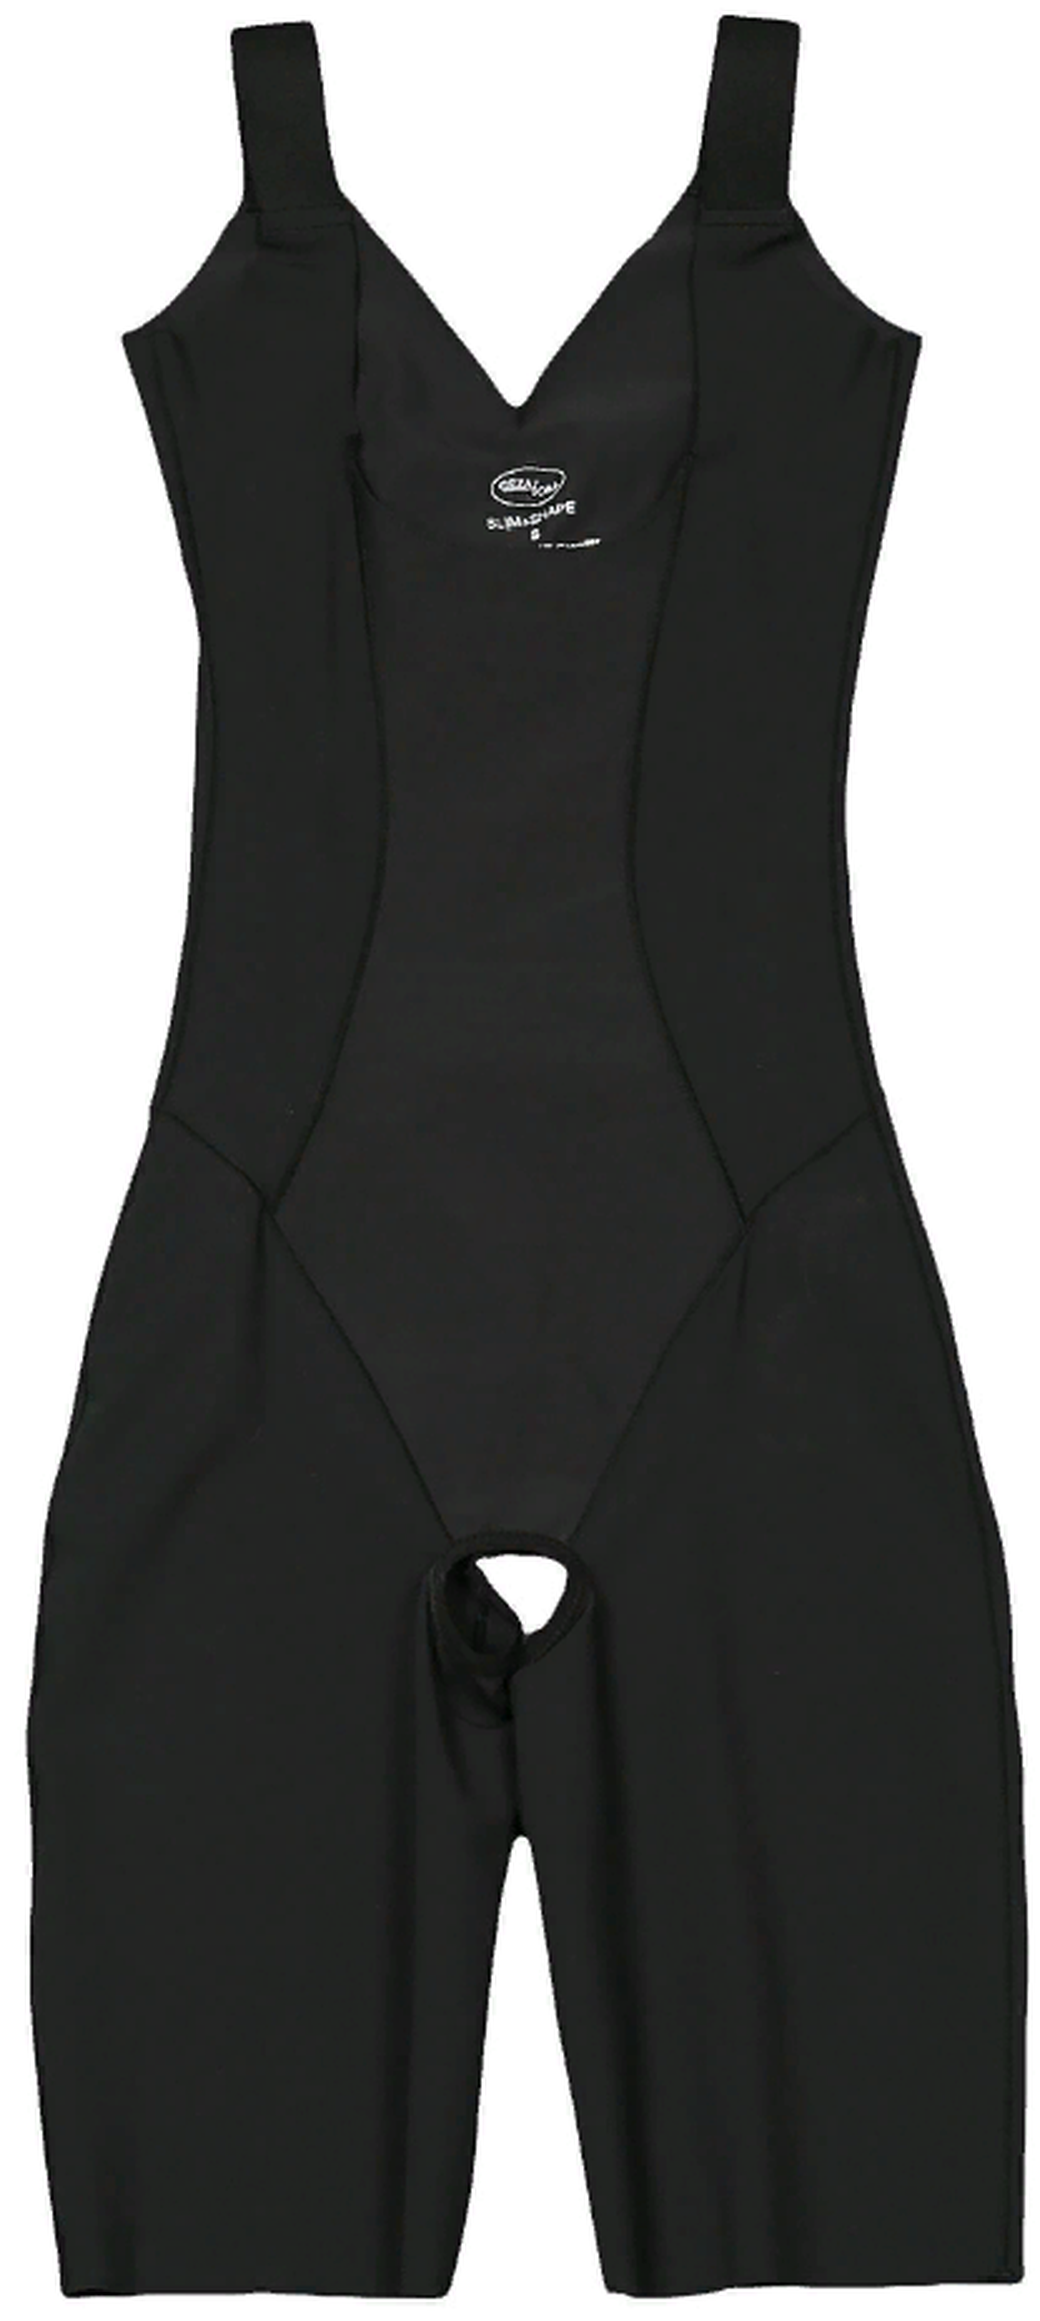 Корректирующее белье комбидрес Slim'n'Shape Bodysuit комбидрес Gezatone, черный, S фото